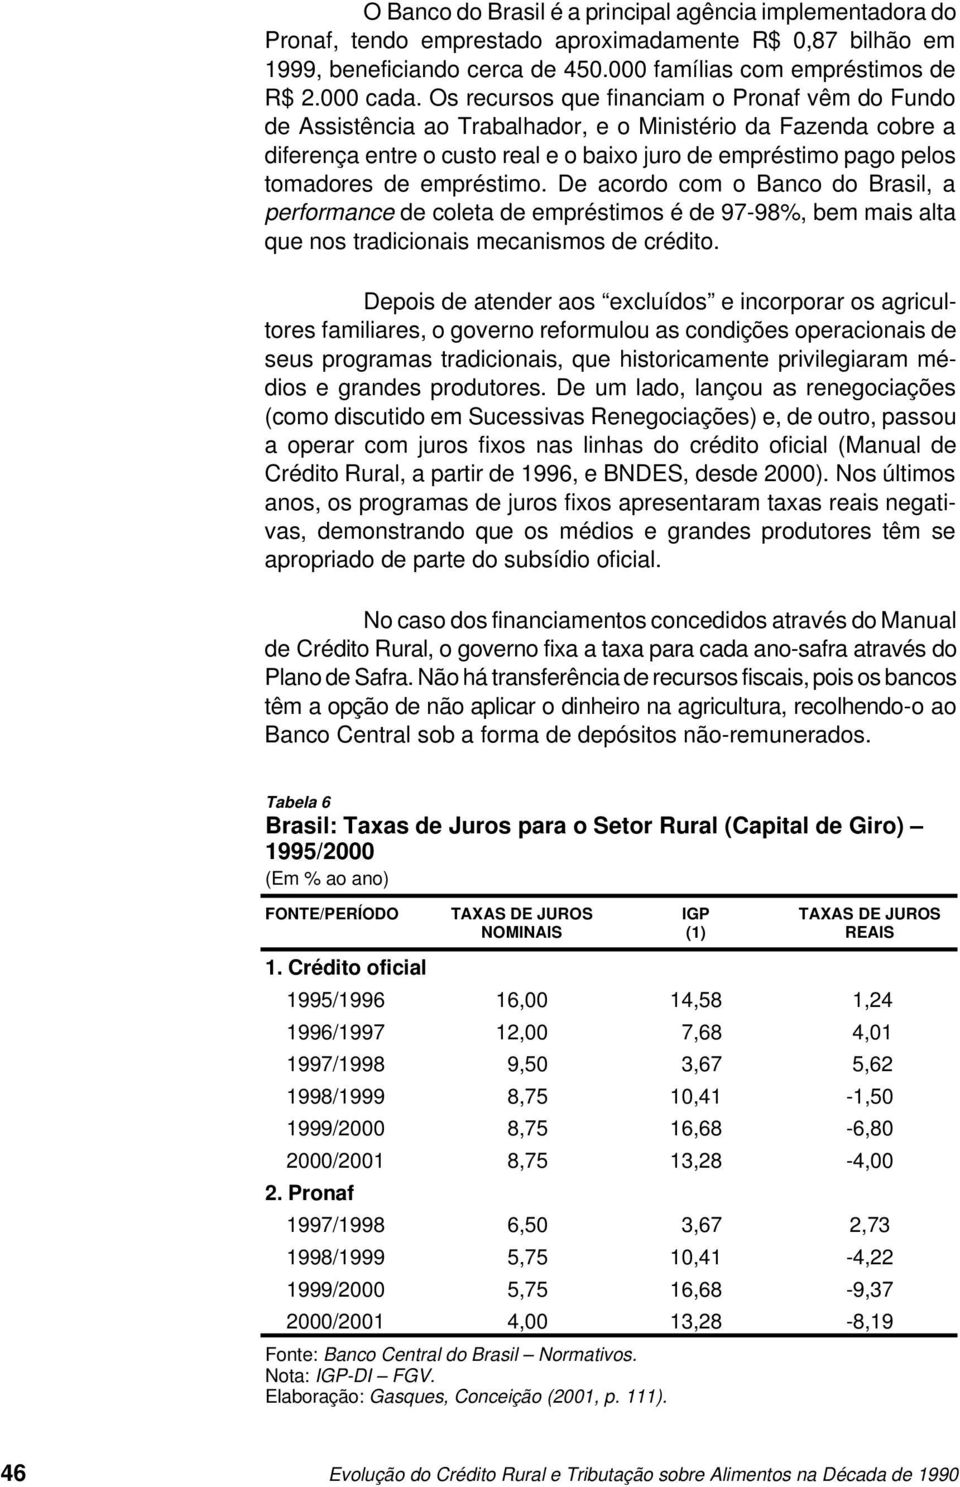 empréstimo. De acordo com o Banco do Brasil, a performance de coleta de empréstimos é de 97-98%, bem mais alta que nos tradicionais mecanismos de crédito.